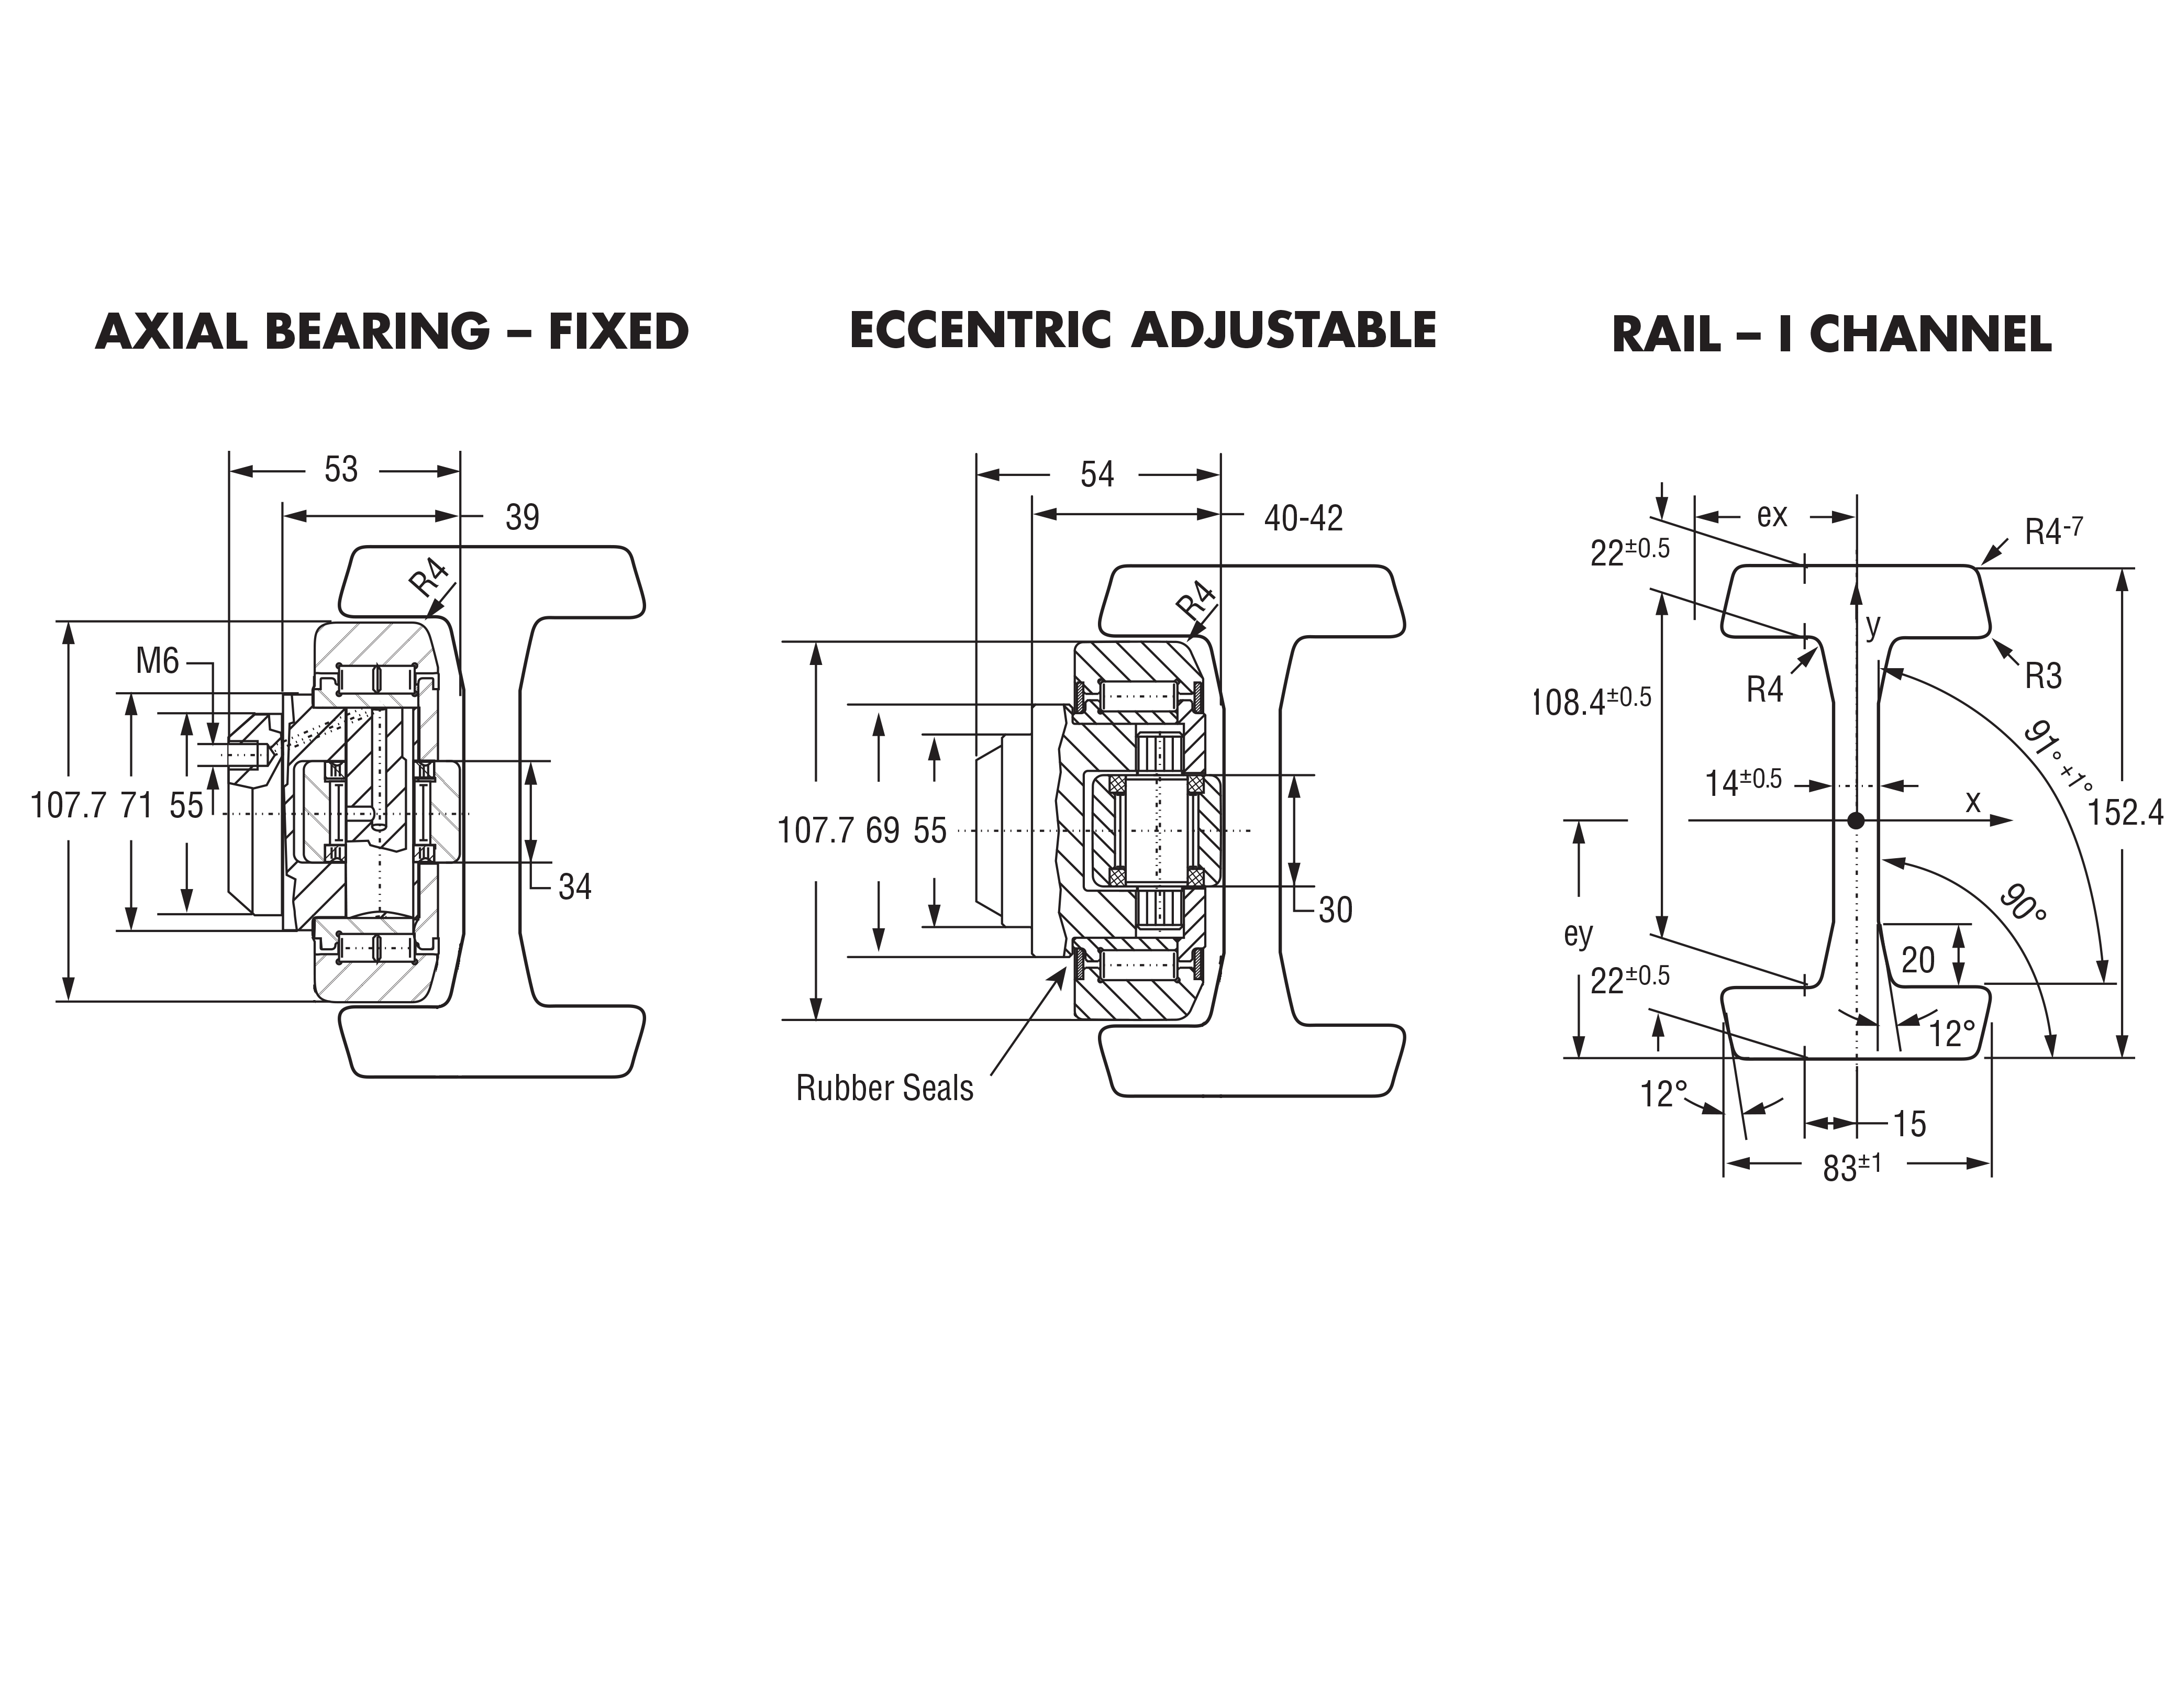 Hevi-Rail 059 - Axial Bearings Fixed